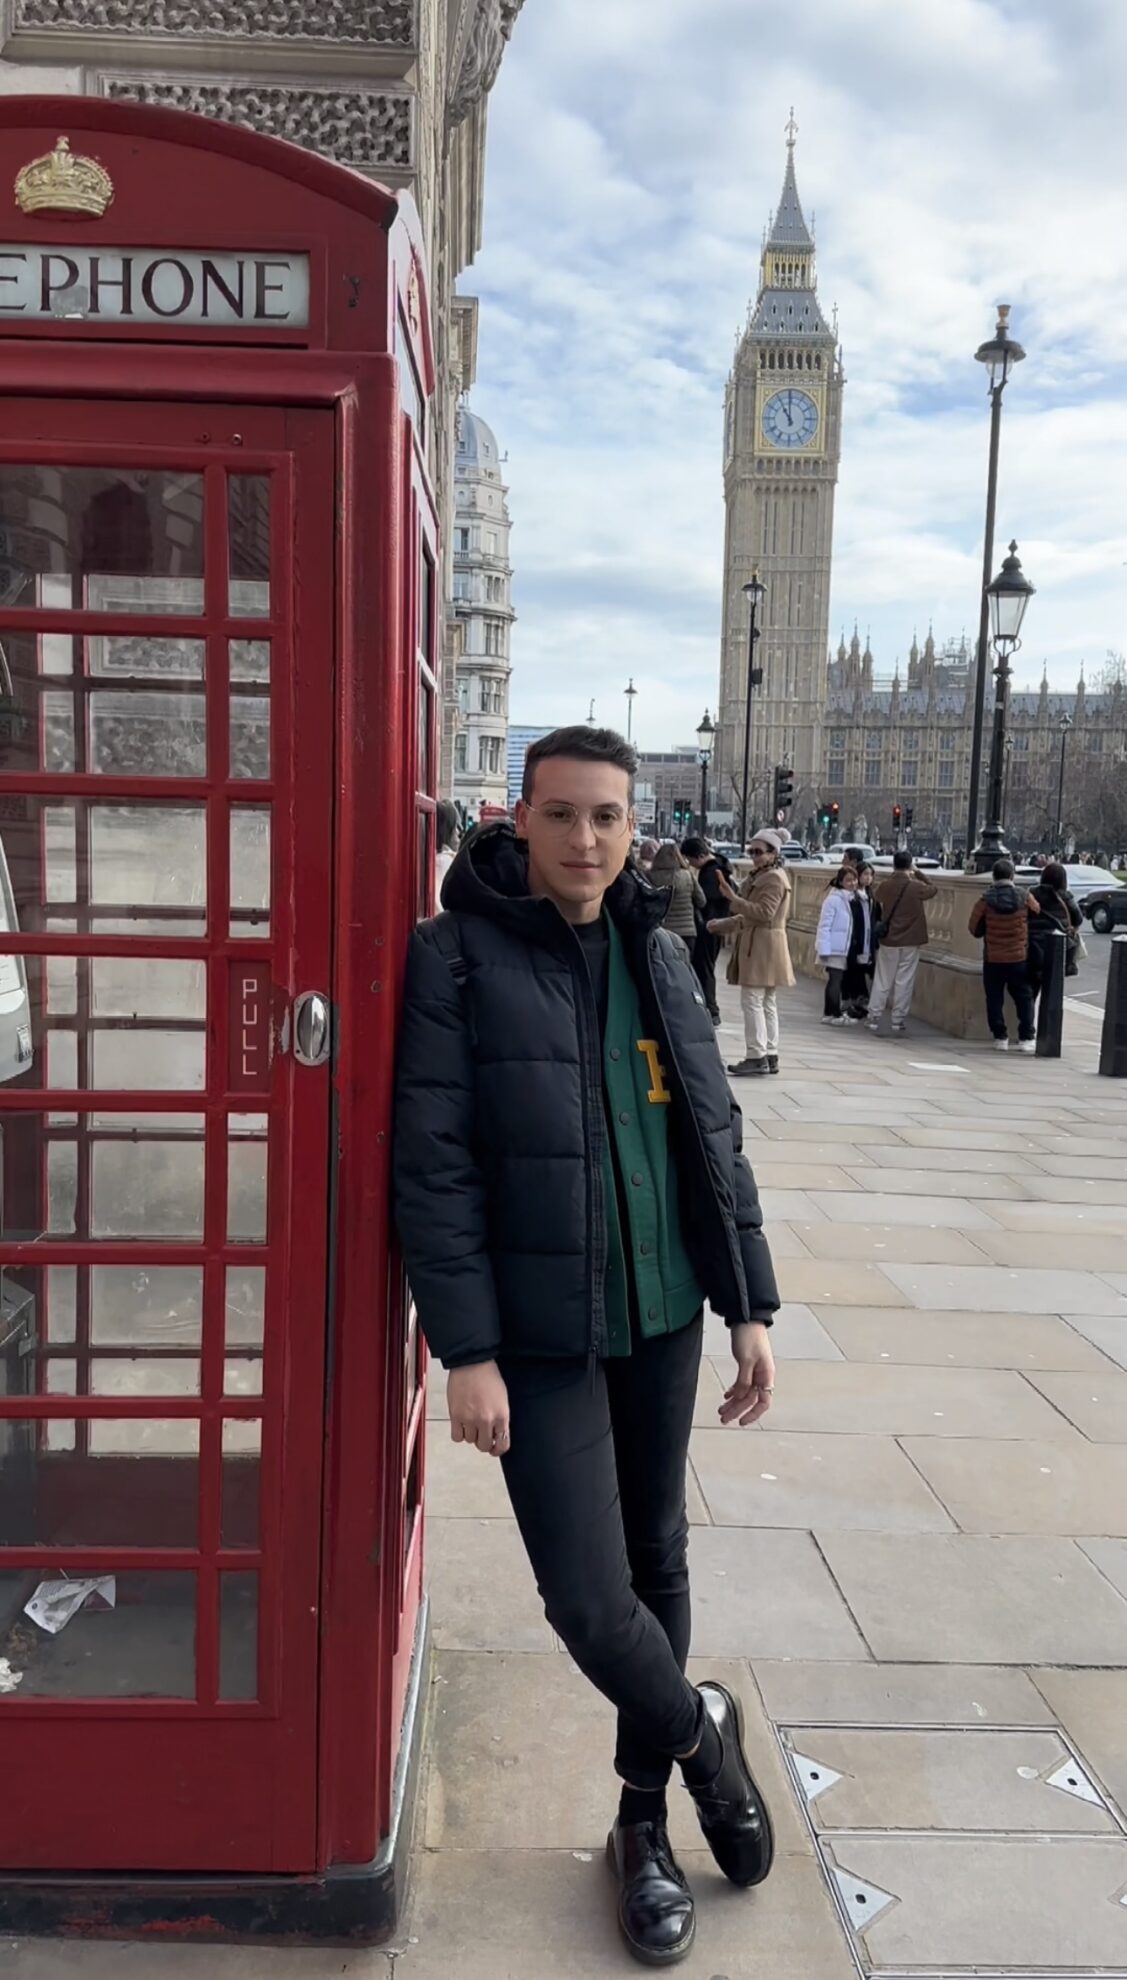 Tante opportunità di lavoro e meritocrazia: Andrea e la “sua” Londra